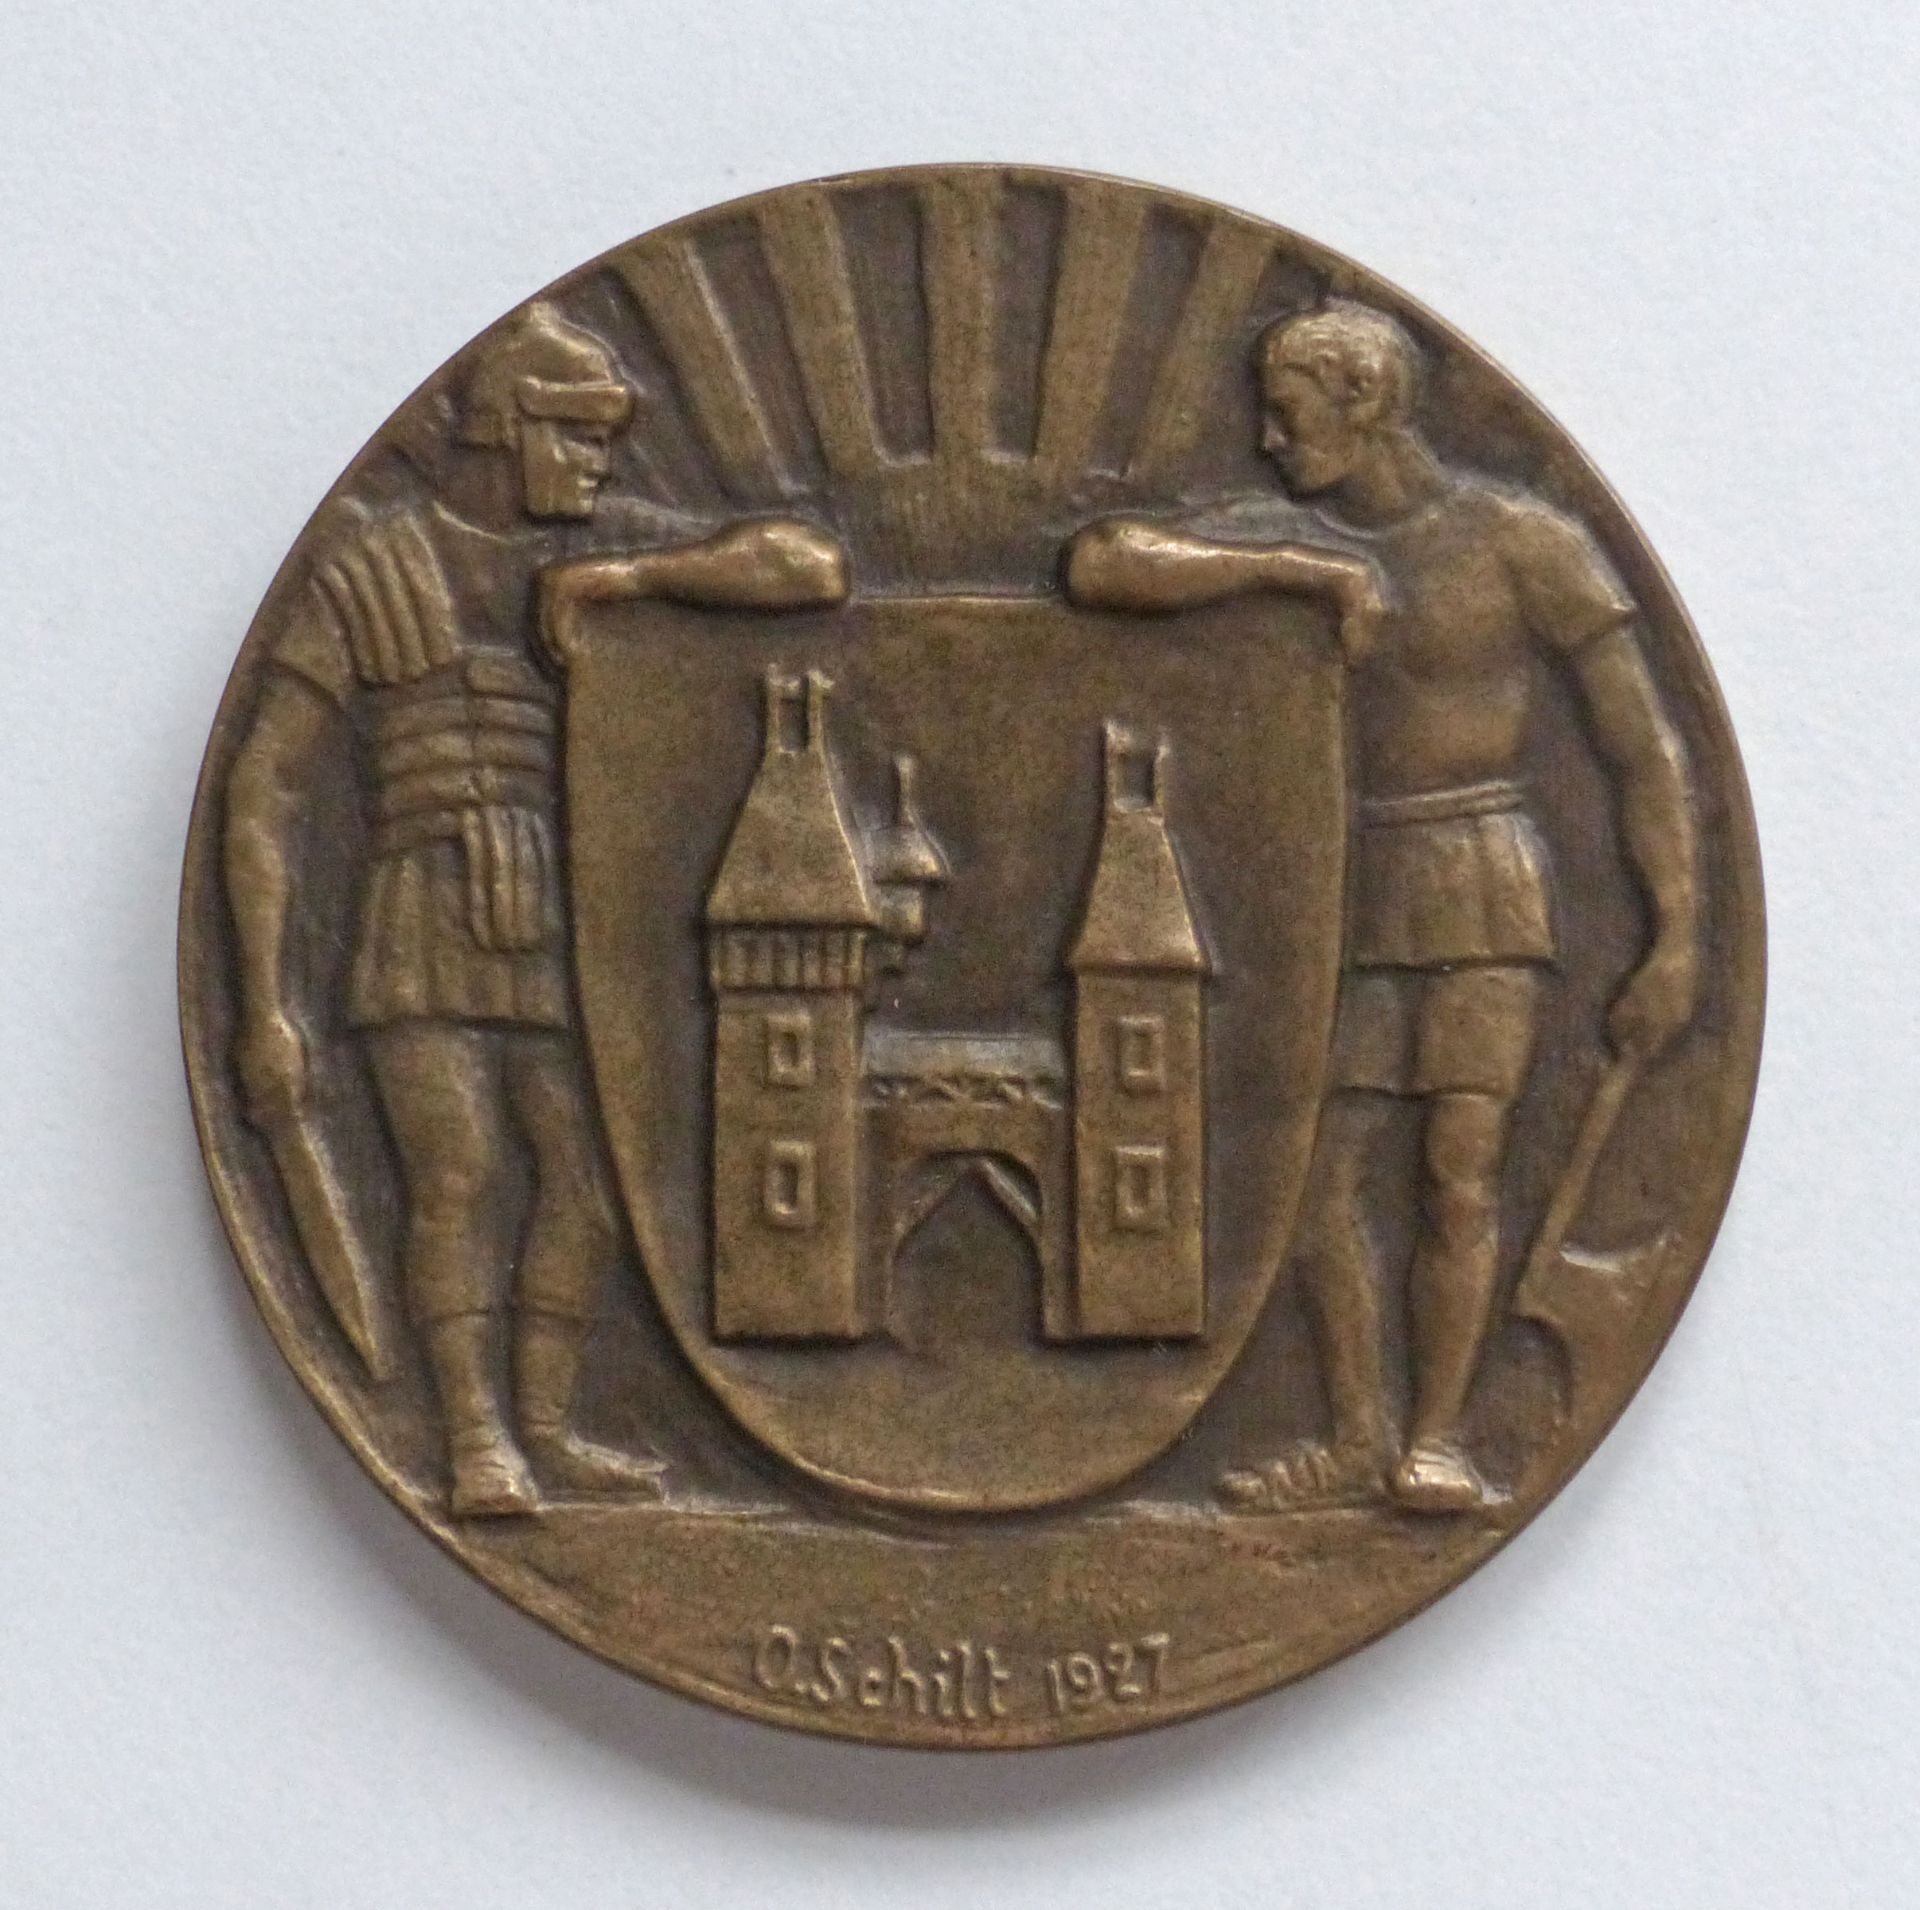 Schützen CH-Brugg Medaille 1927 Standschützengesellschaft 50 mm Durchm. I-II